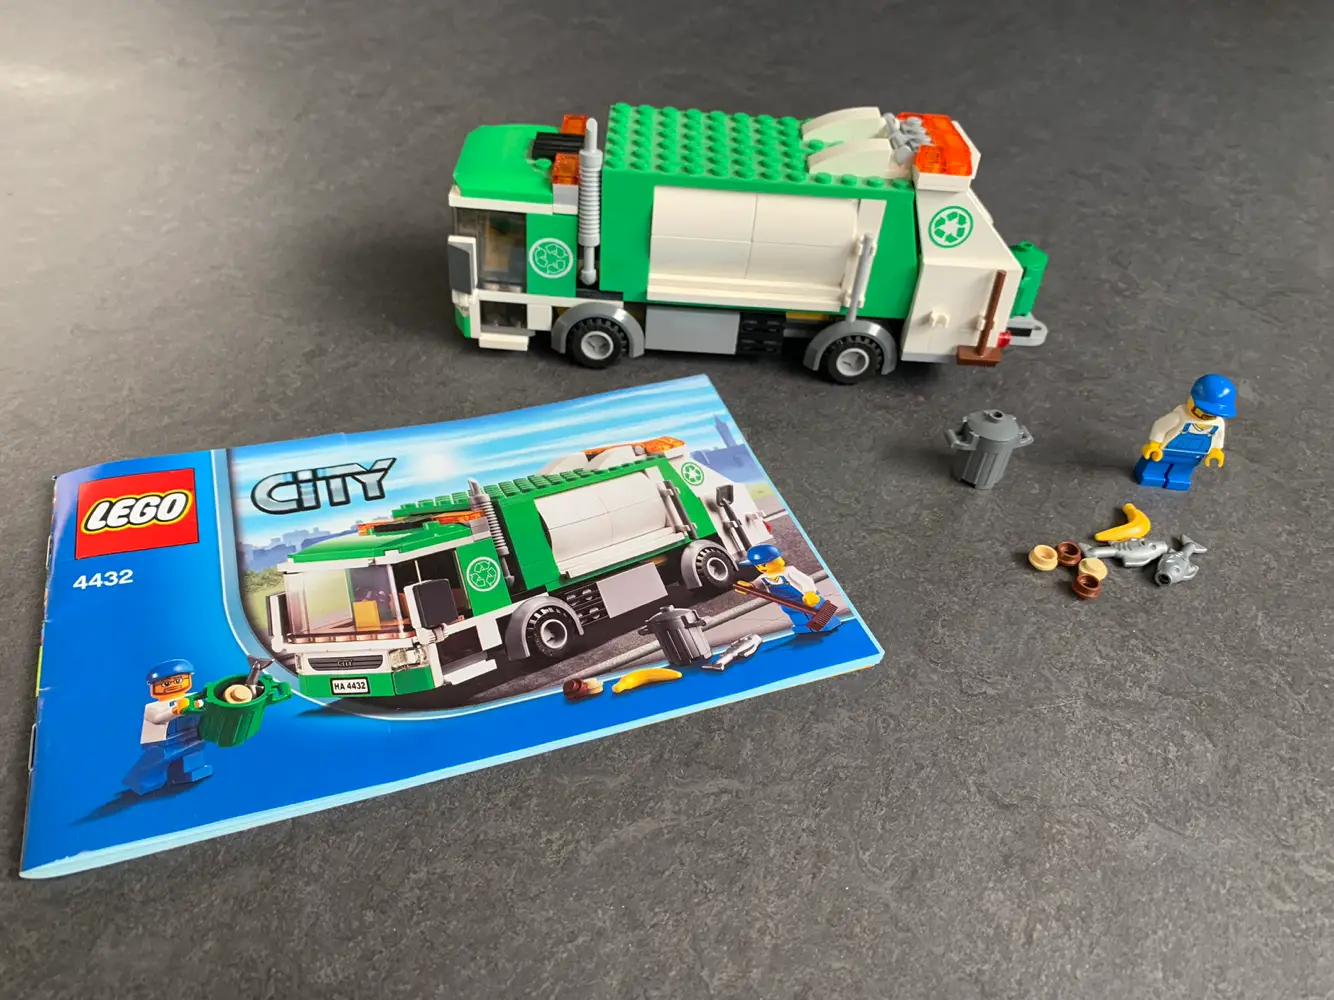 Køb LEGO City skraldebil 4432 af Anders på Reshopper · Shop secondhand børn, mor og bolig